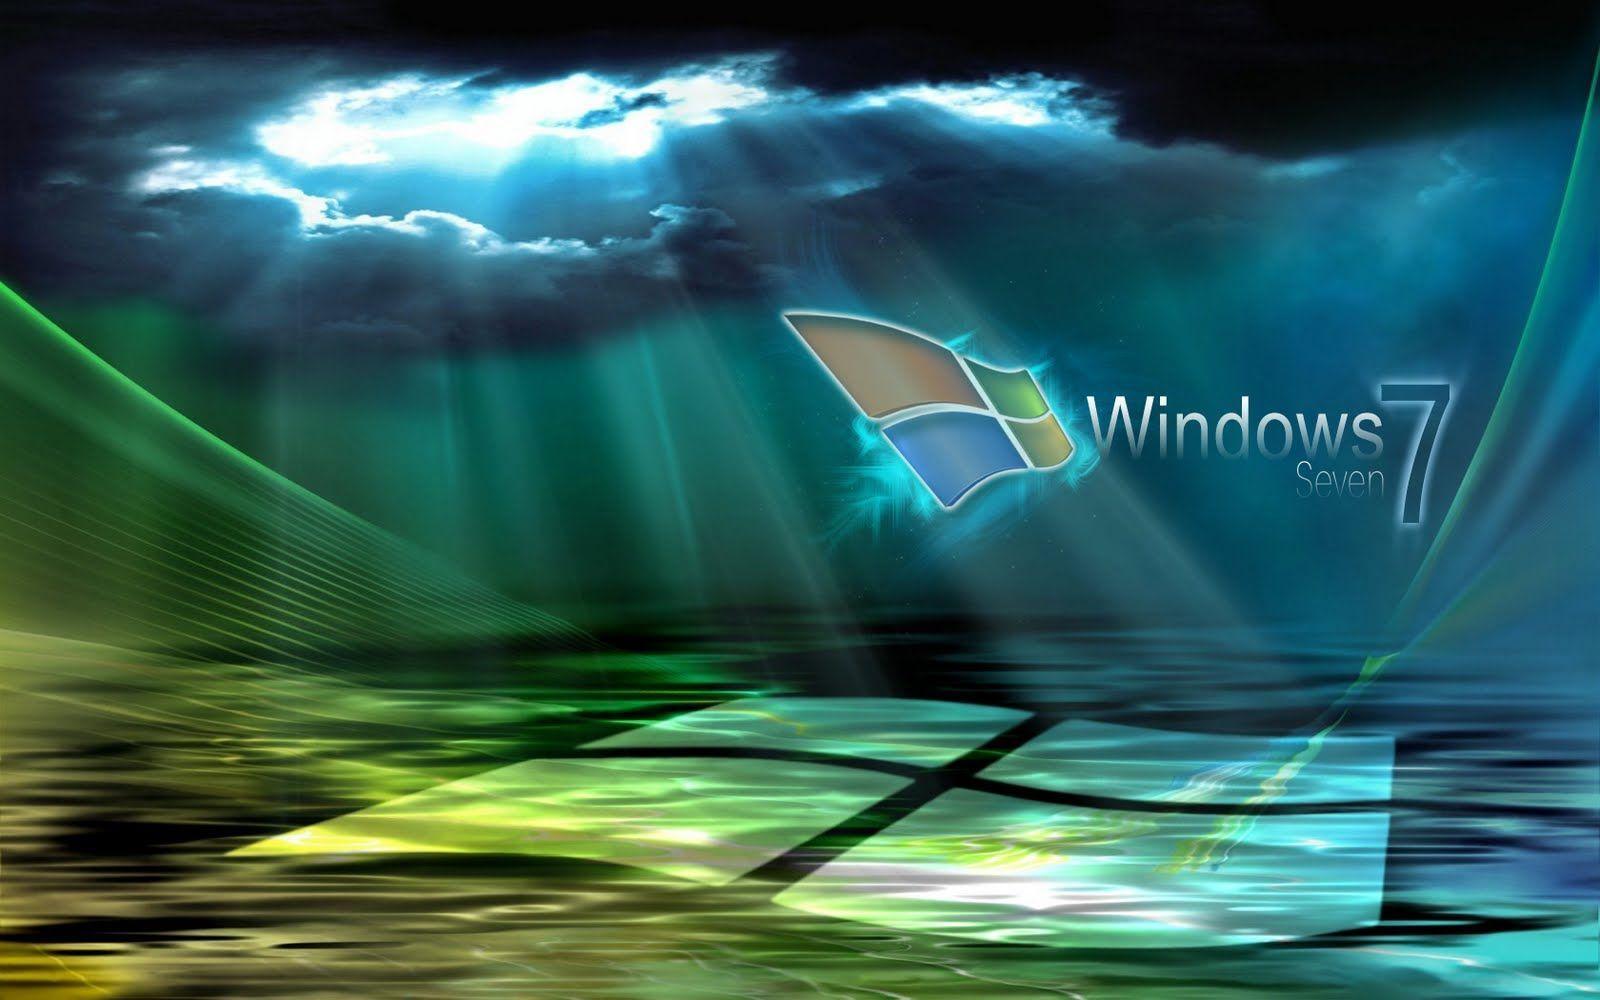 Pin Windows 7 Microsoft Logos 1366x768 Wallpaper –free Cake